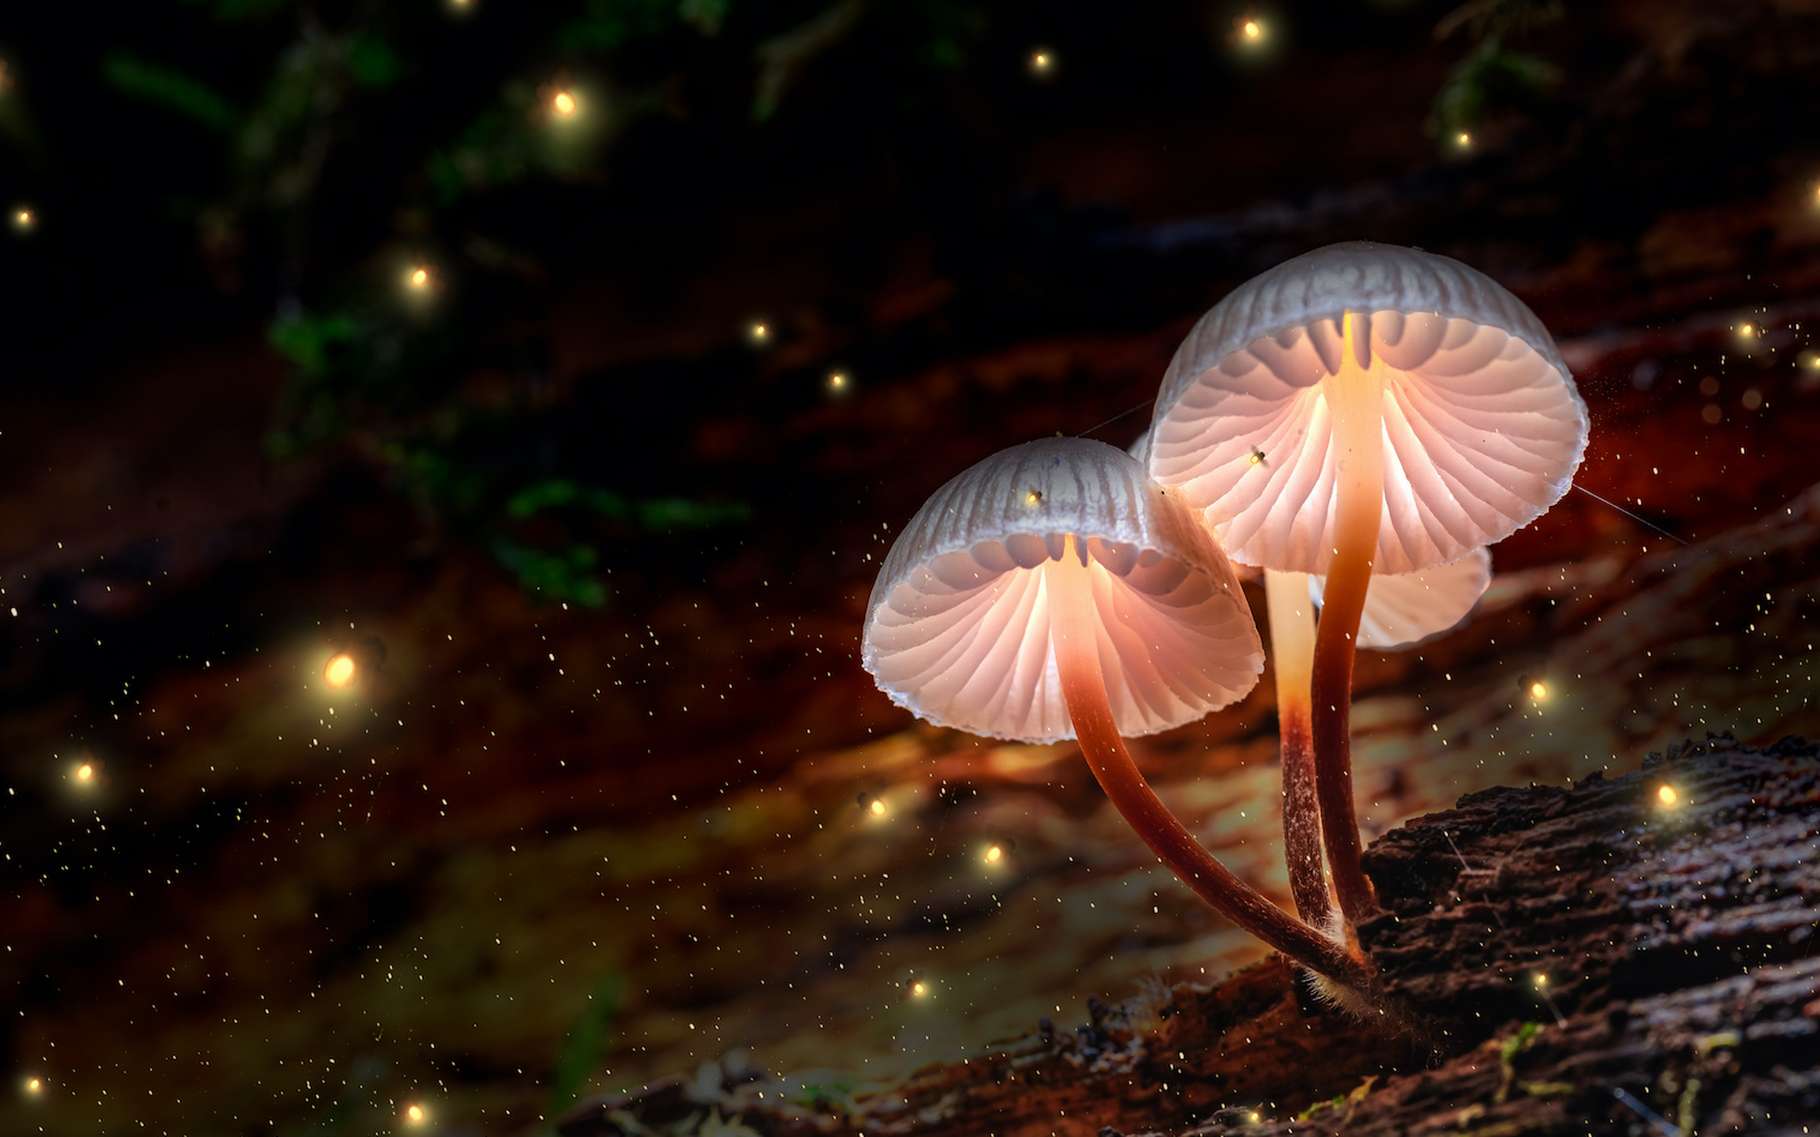 Des chercheurs voient dans les signaux électriques produits par les champignons, une sorte de langage composé de « mots ». © shaiith, Adobe Stock